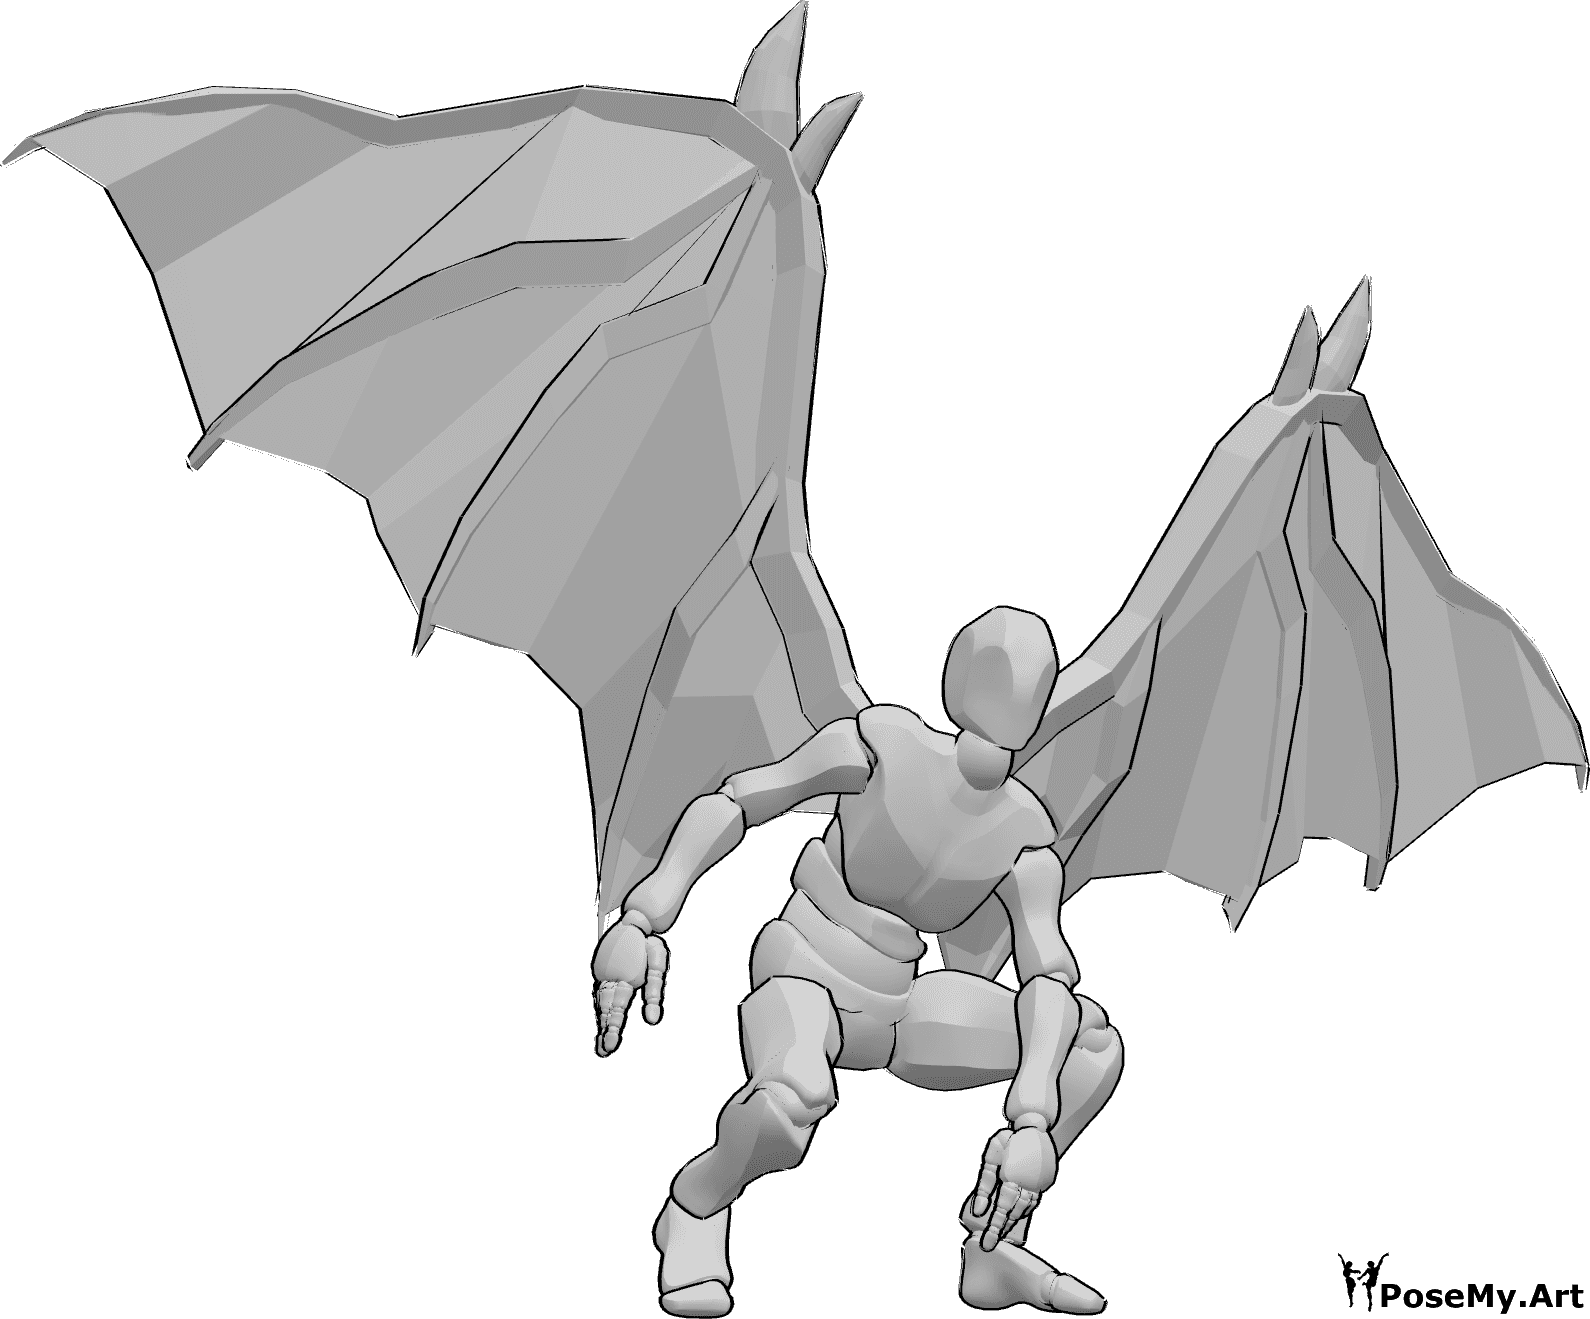 Posen-Referenz- Teufelsflügel Landepose - Männchen mit Teufelsflügeln landet, schaut nach vorne und balanciert mit den Händen